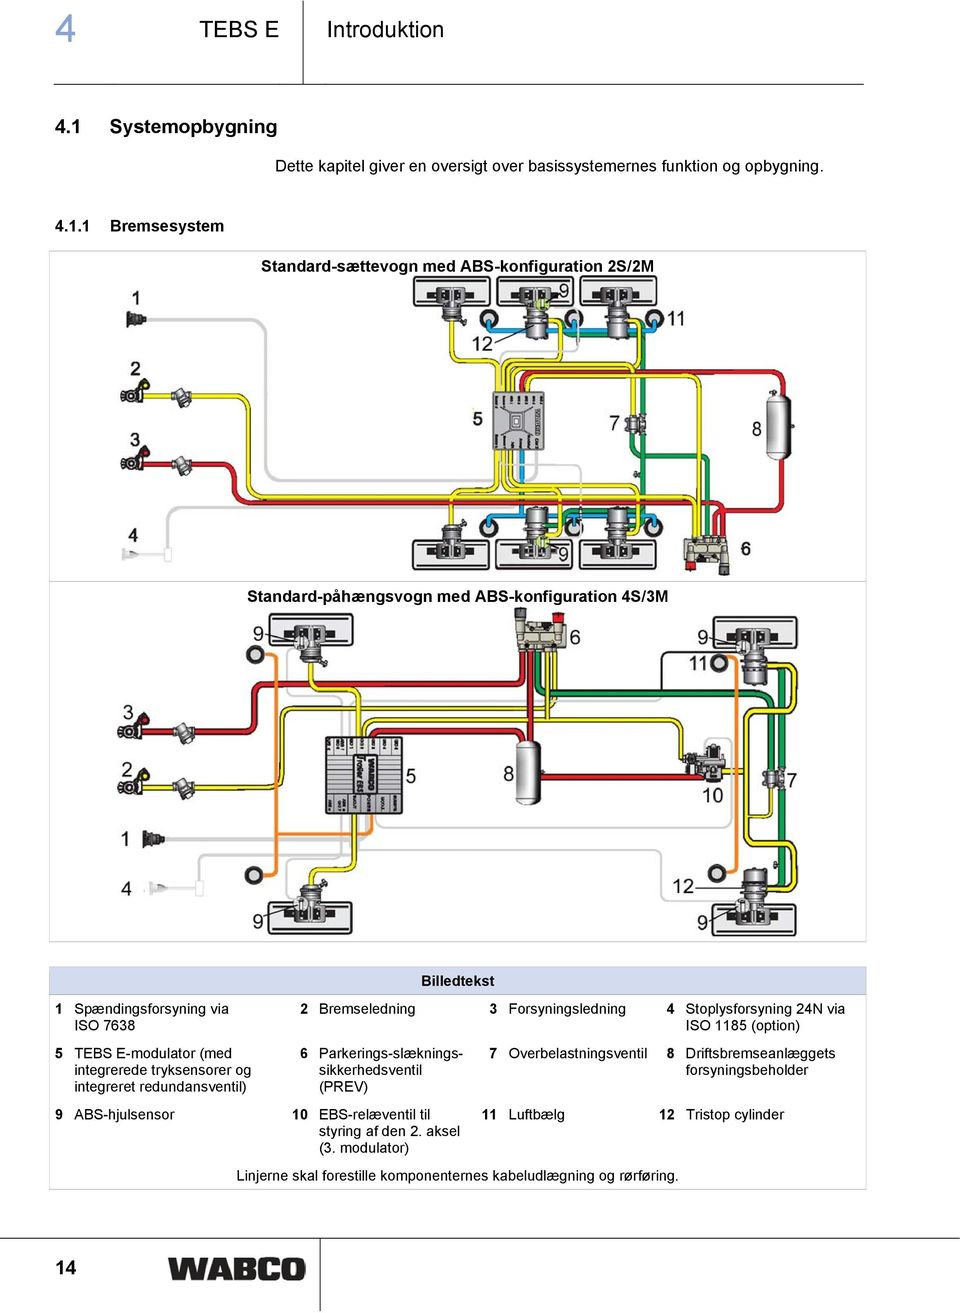 1 Bremsesystem Standard-sættevogn med ABS-konfiguration 2S/2M Standard-påhængsvogn med ABS-konfiguration 4S/3M 1 Spændingsforsyning via ISO 7638 5 TEBS E-modulator (med integrerede